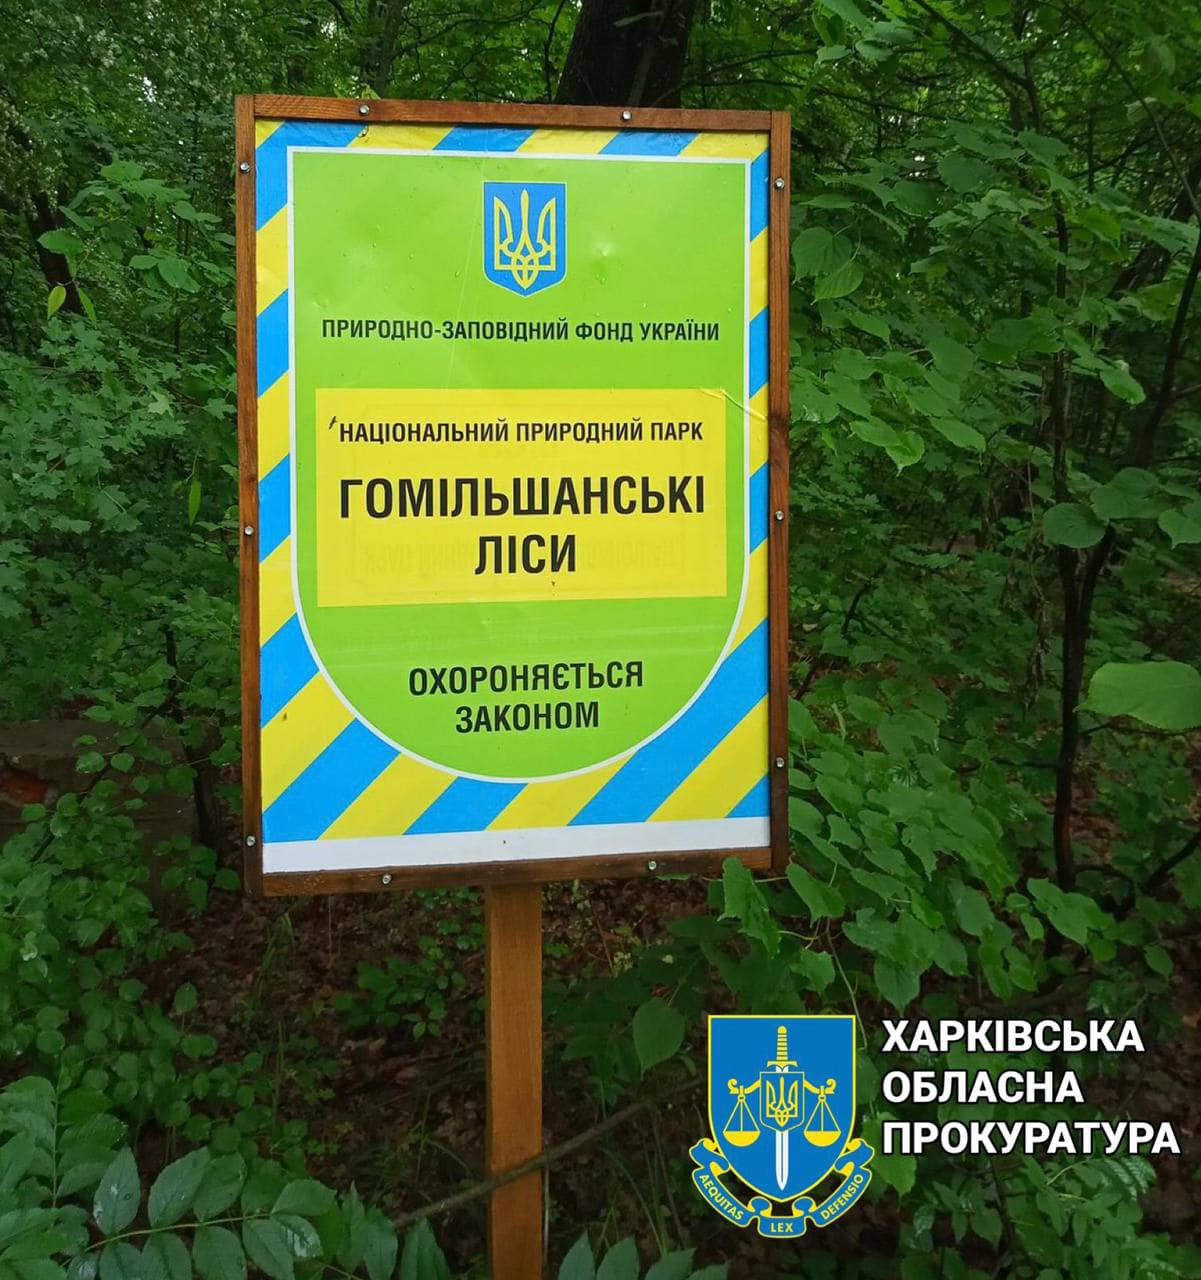 На Харківщині незаконно передали у приватну власність ділянку у Гомільшанських лісах вартістю майже 3 млн грн